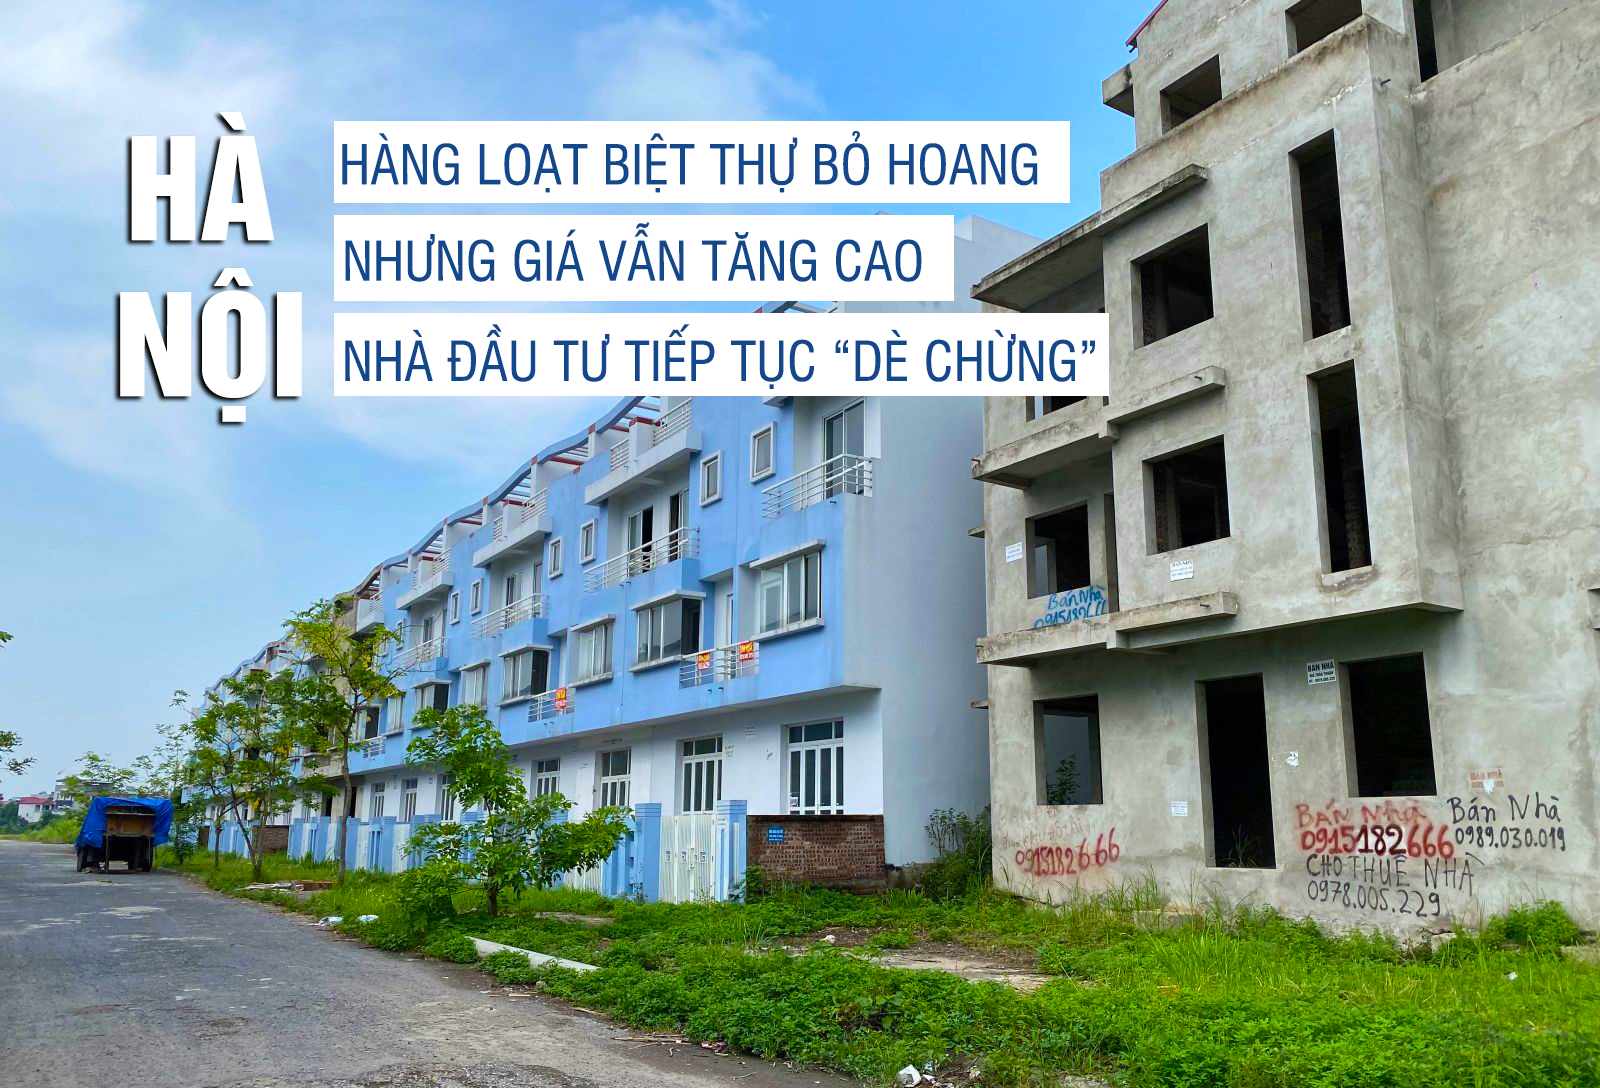 Hà Nội: Hàng loạt biệt thự bỏ hoang nhưng giá vẫn tăng cao, nhà đầu tư tiếp tục “dè chừng”